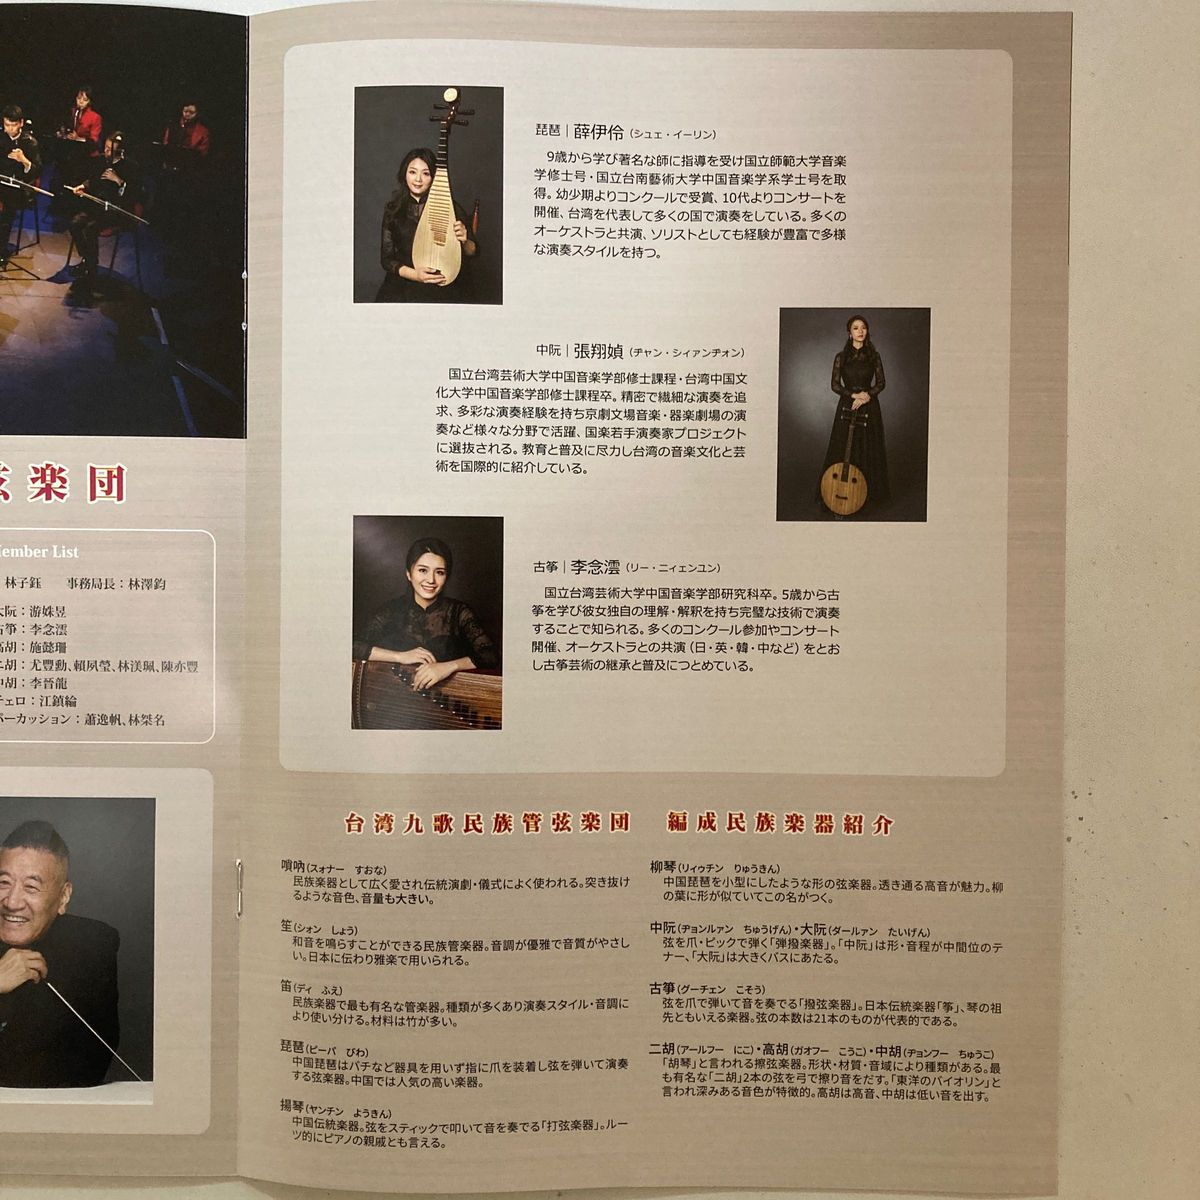 張鶴来日20周年記念&台湾九歌楽団富山公演 パンフレット+チケット